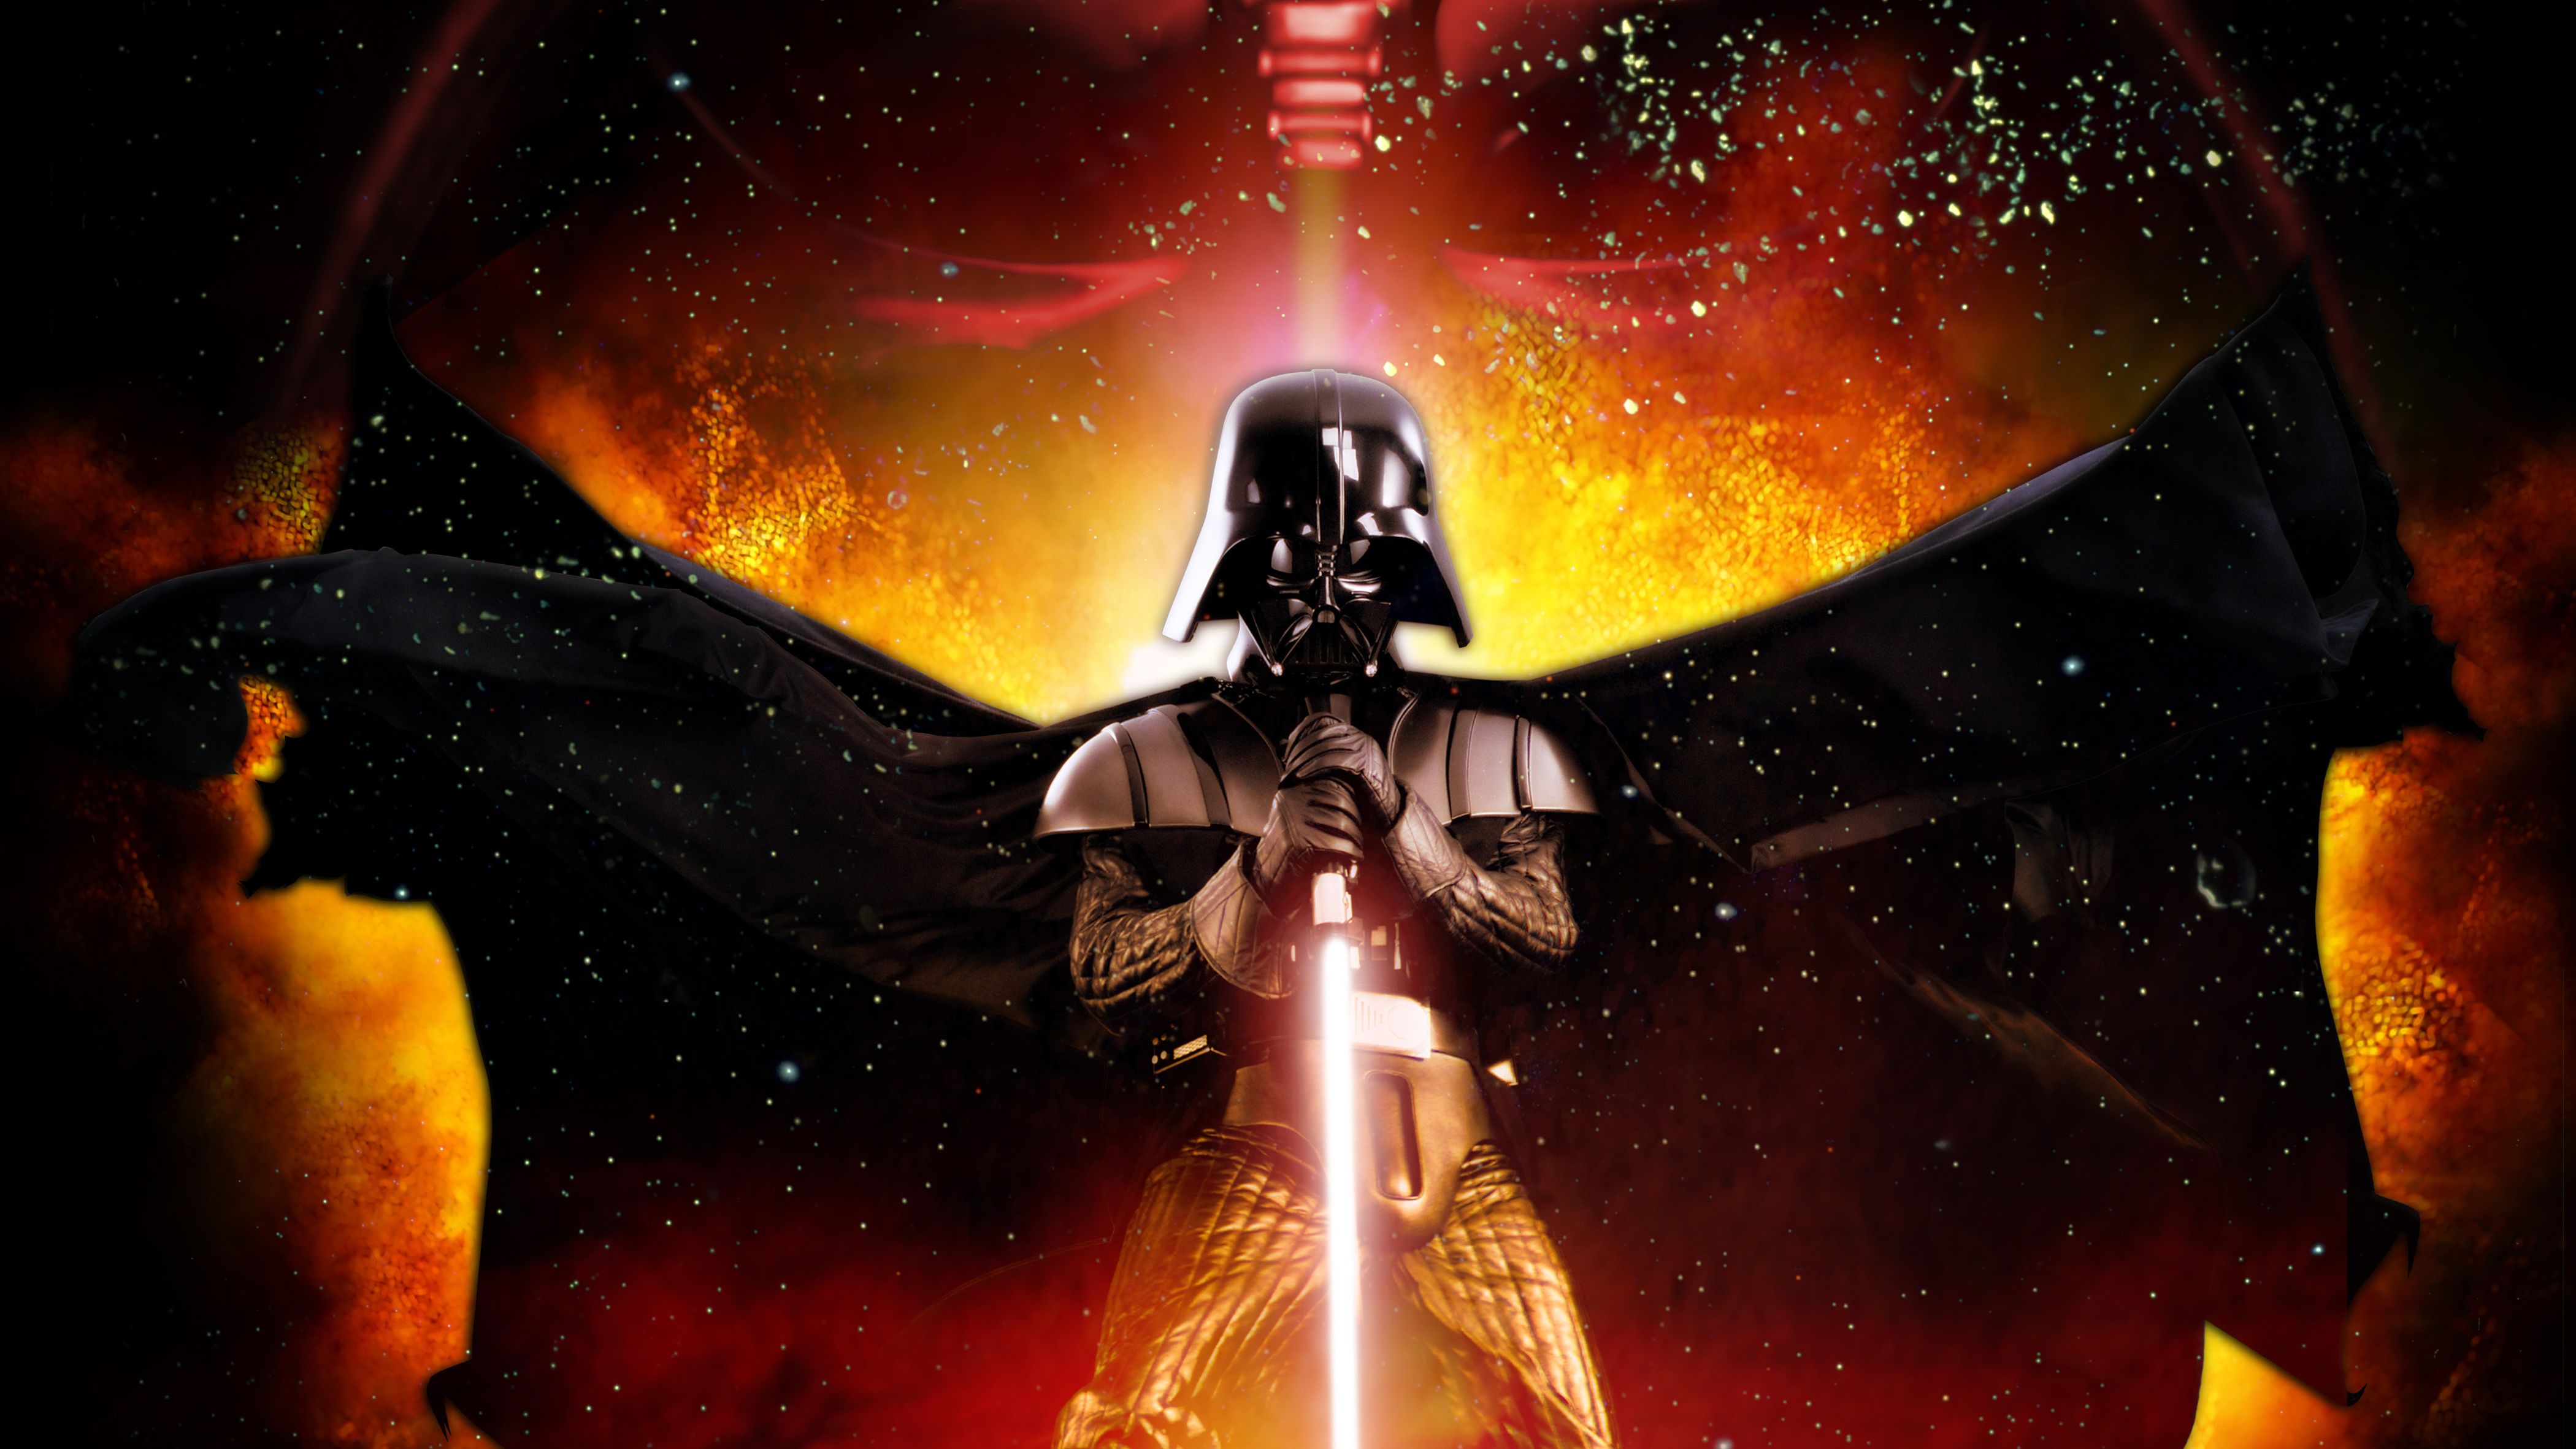 4200x2363 Darth Vader Star Wars Poster 4k Hd Movies 4k Wallpaper Image